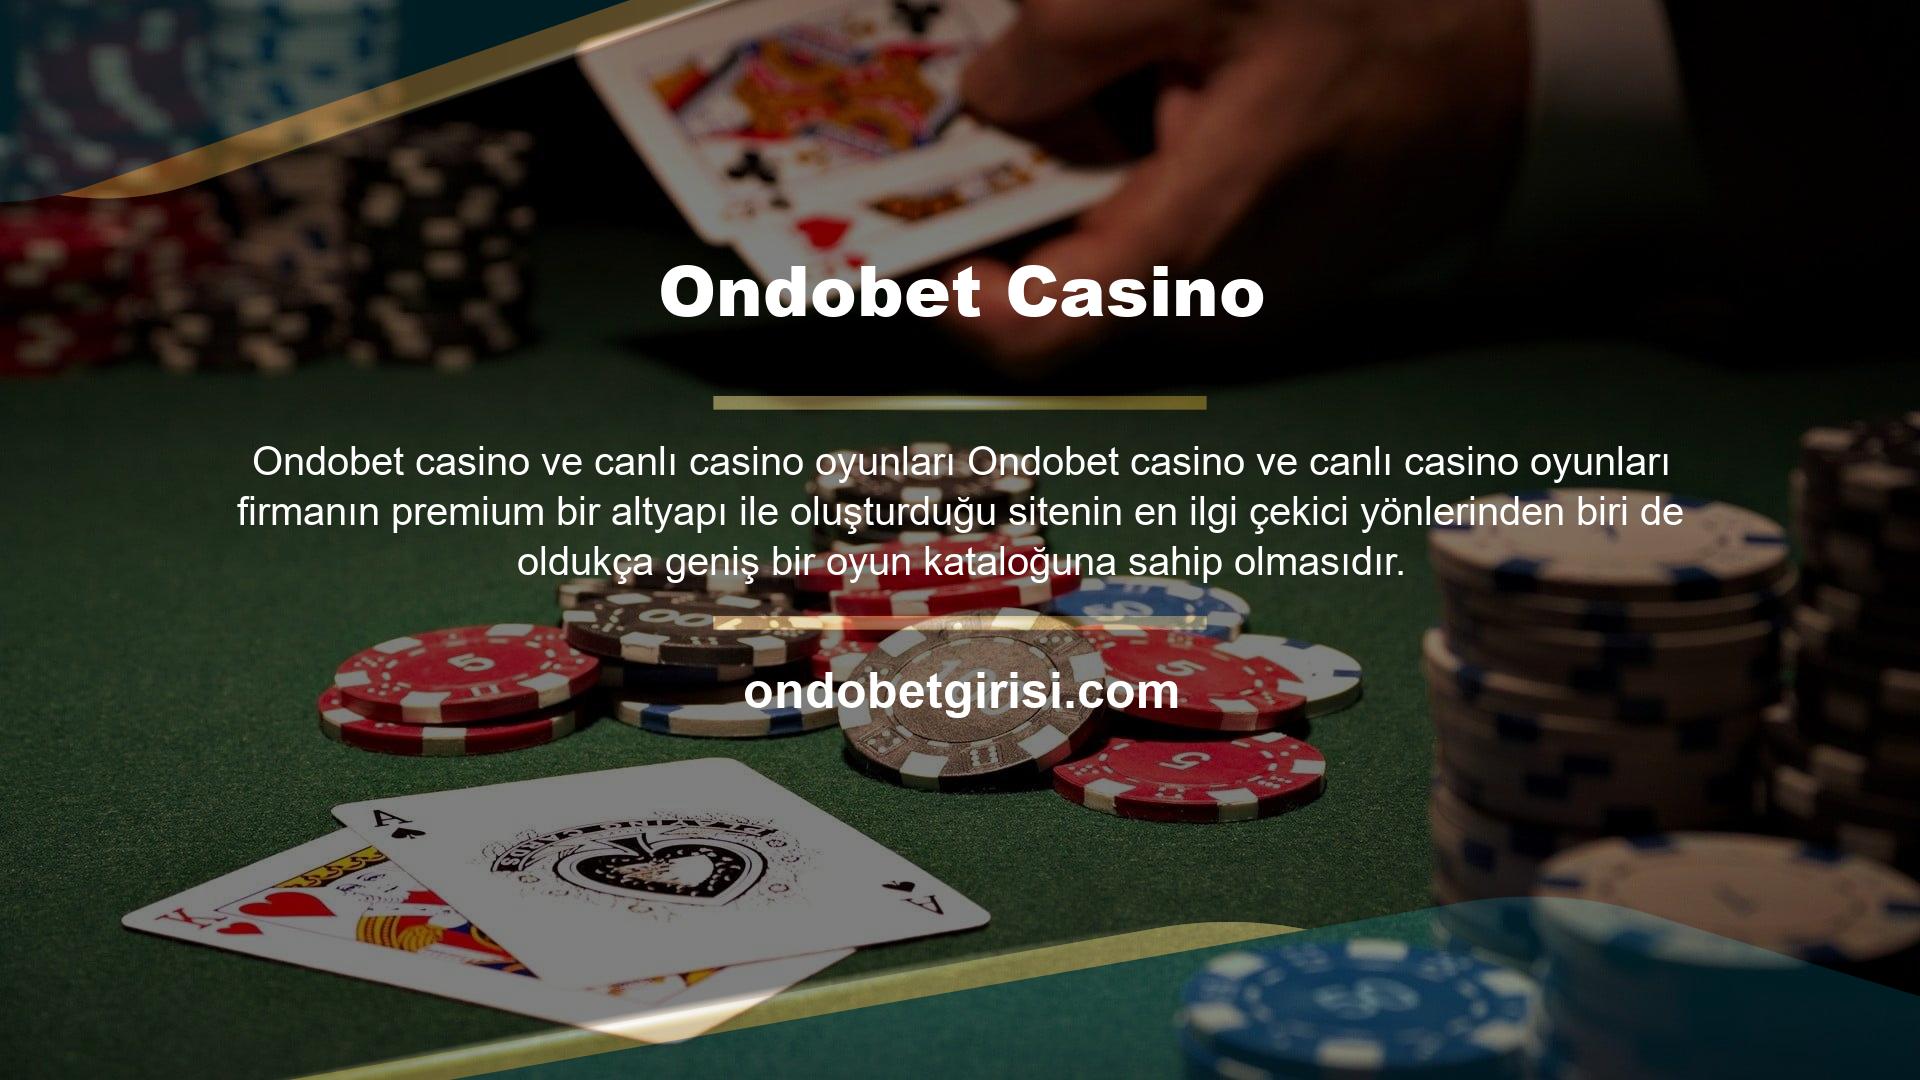 Ondobet casino oyunları açısından da bunu sunuyor ve oldukça geniş bir oyun portföyü hazırlamış durumda